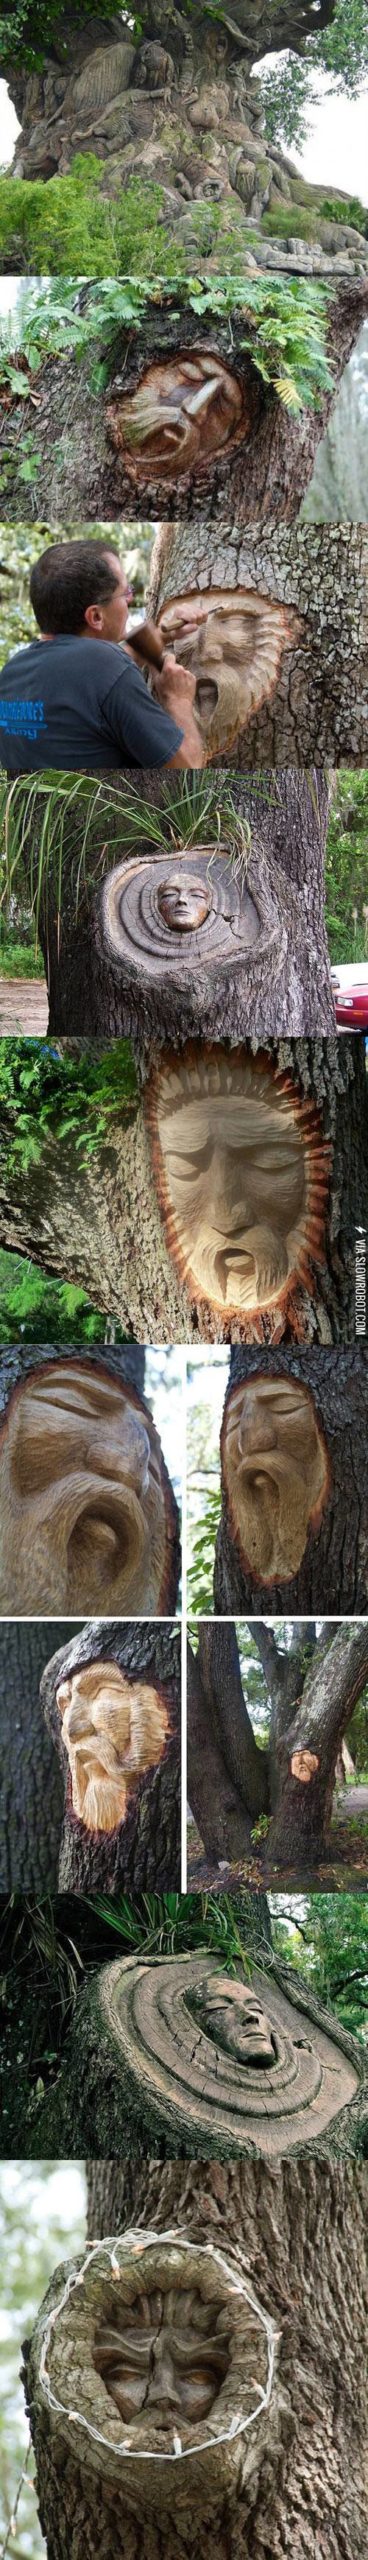 Tree+carvings